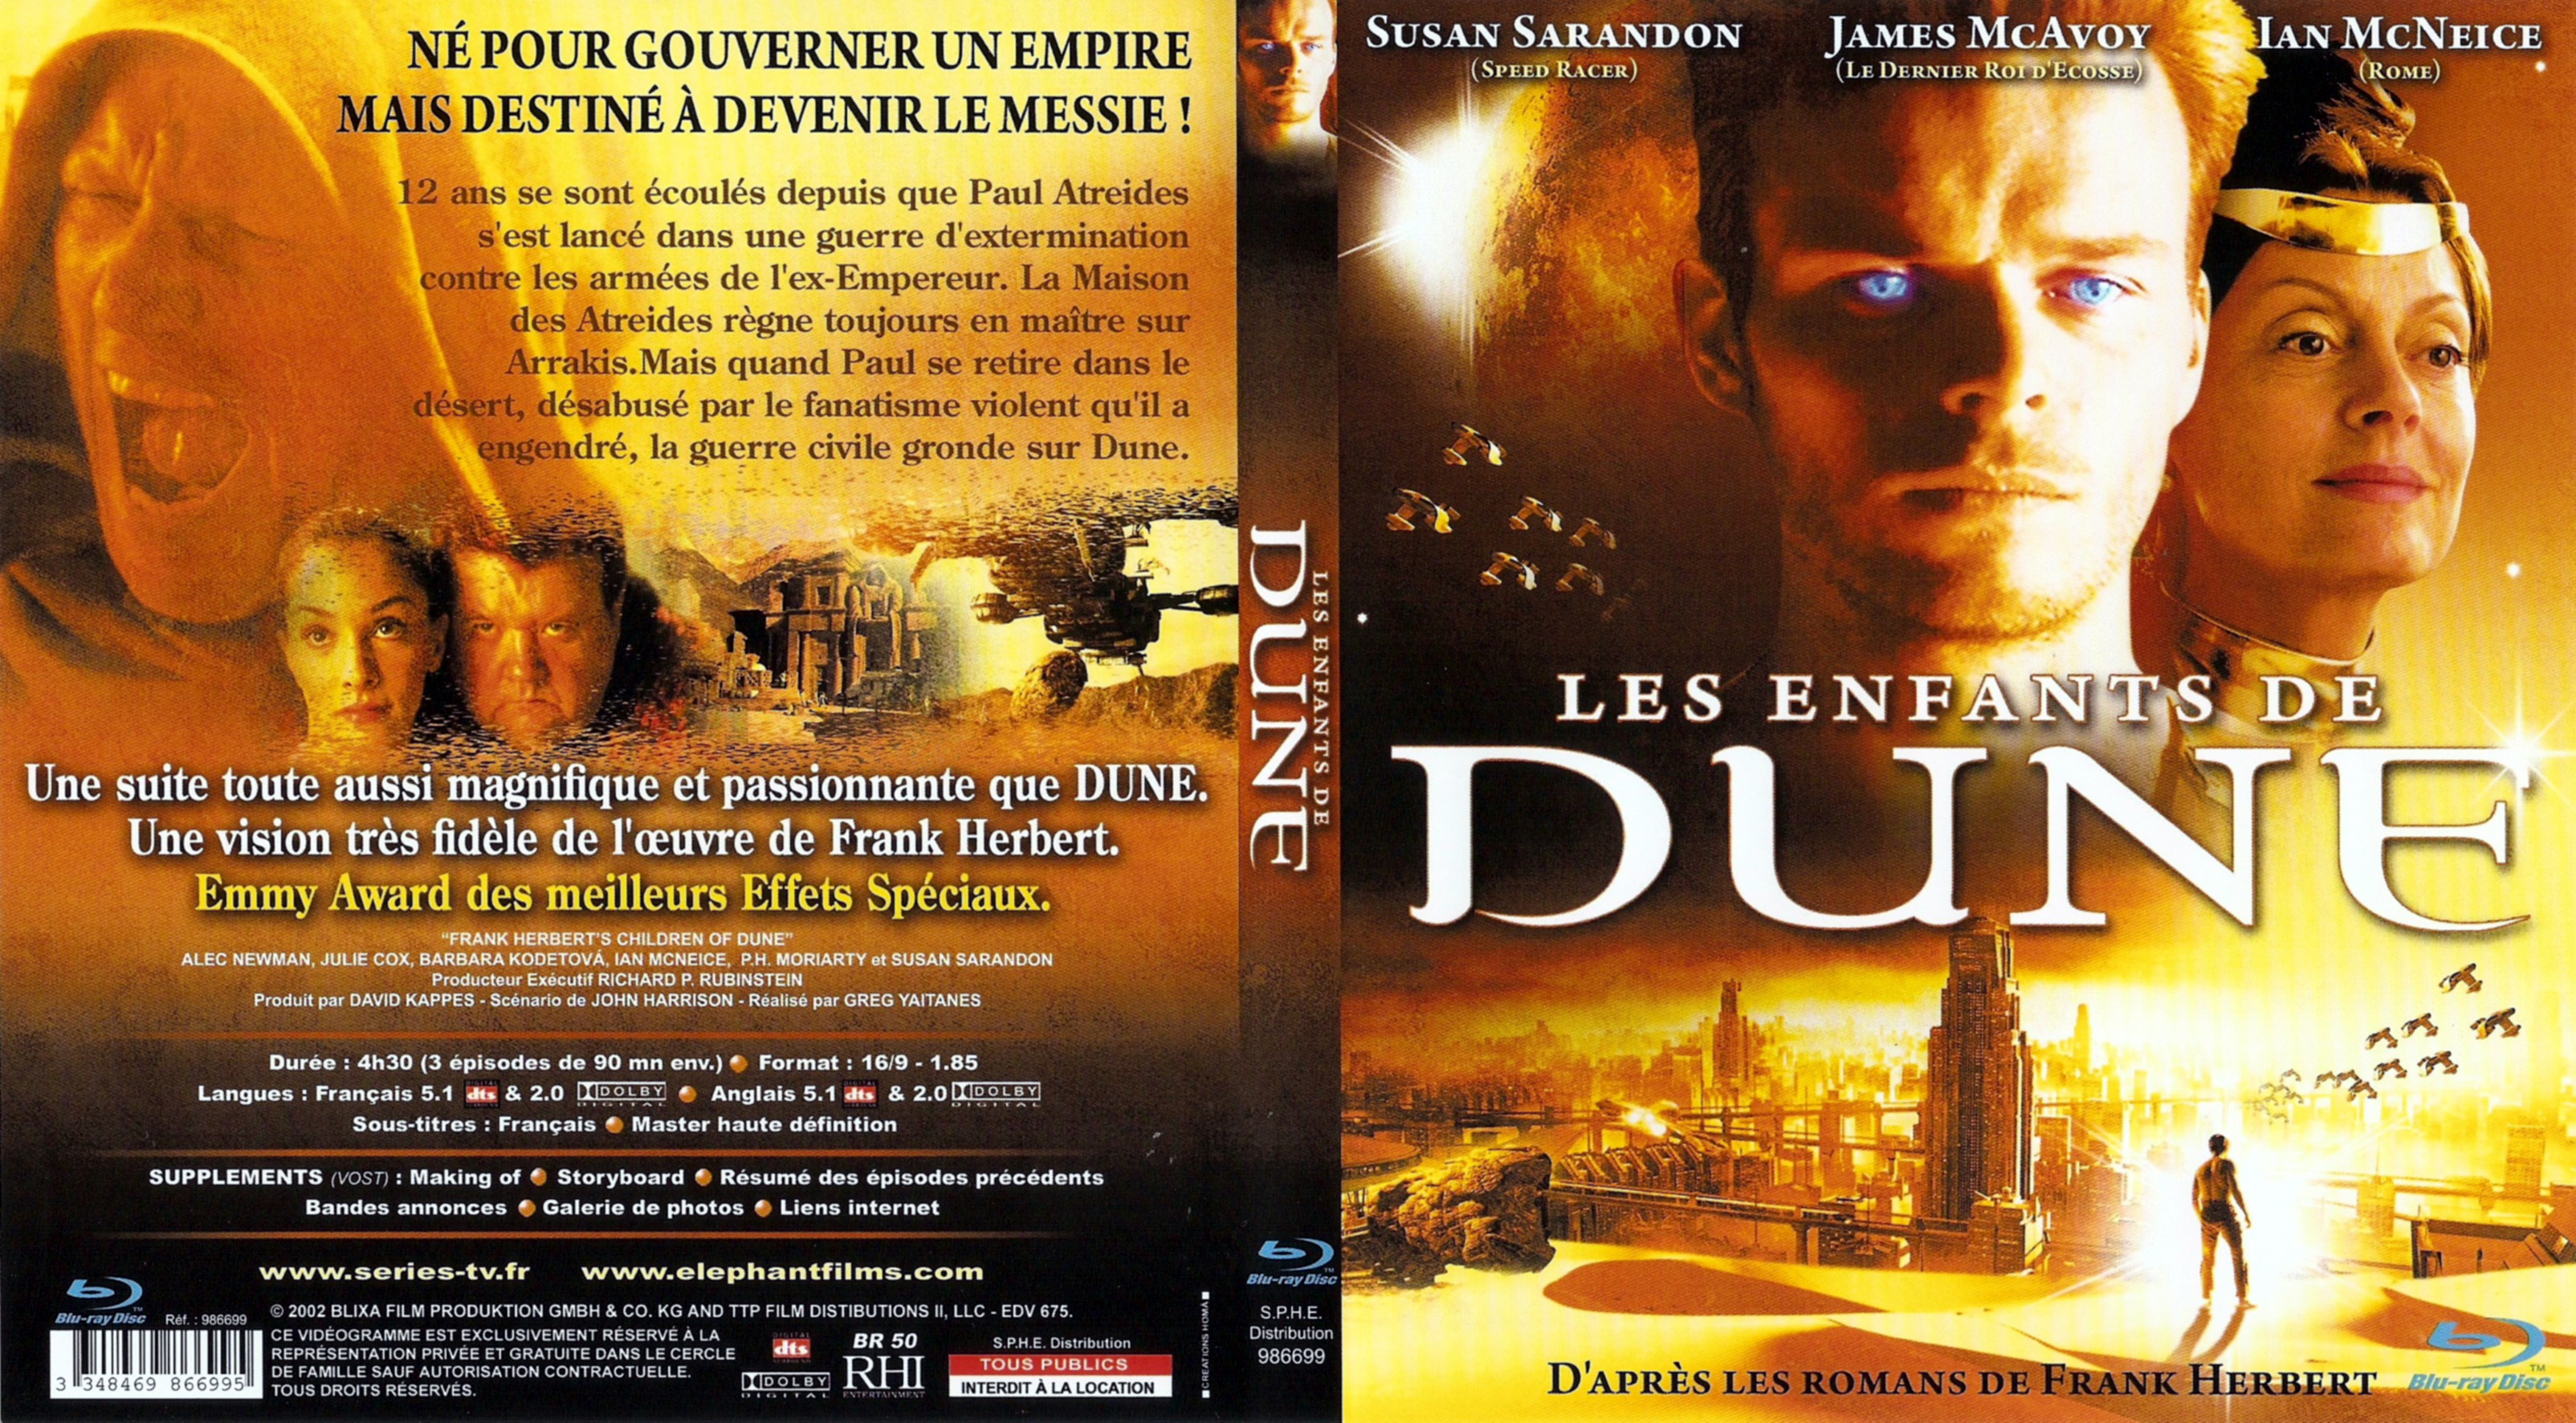 Jaquette DVD Les enfants de Dune (BLU-RAY)